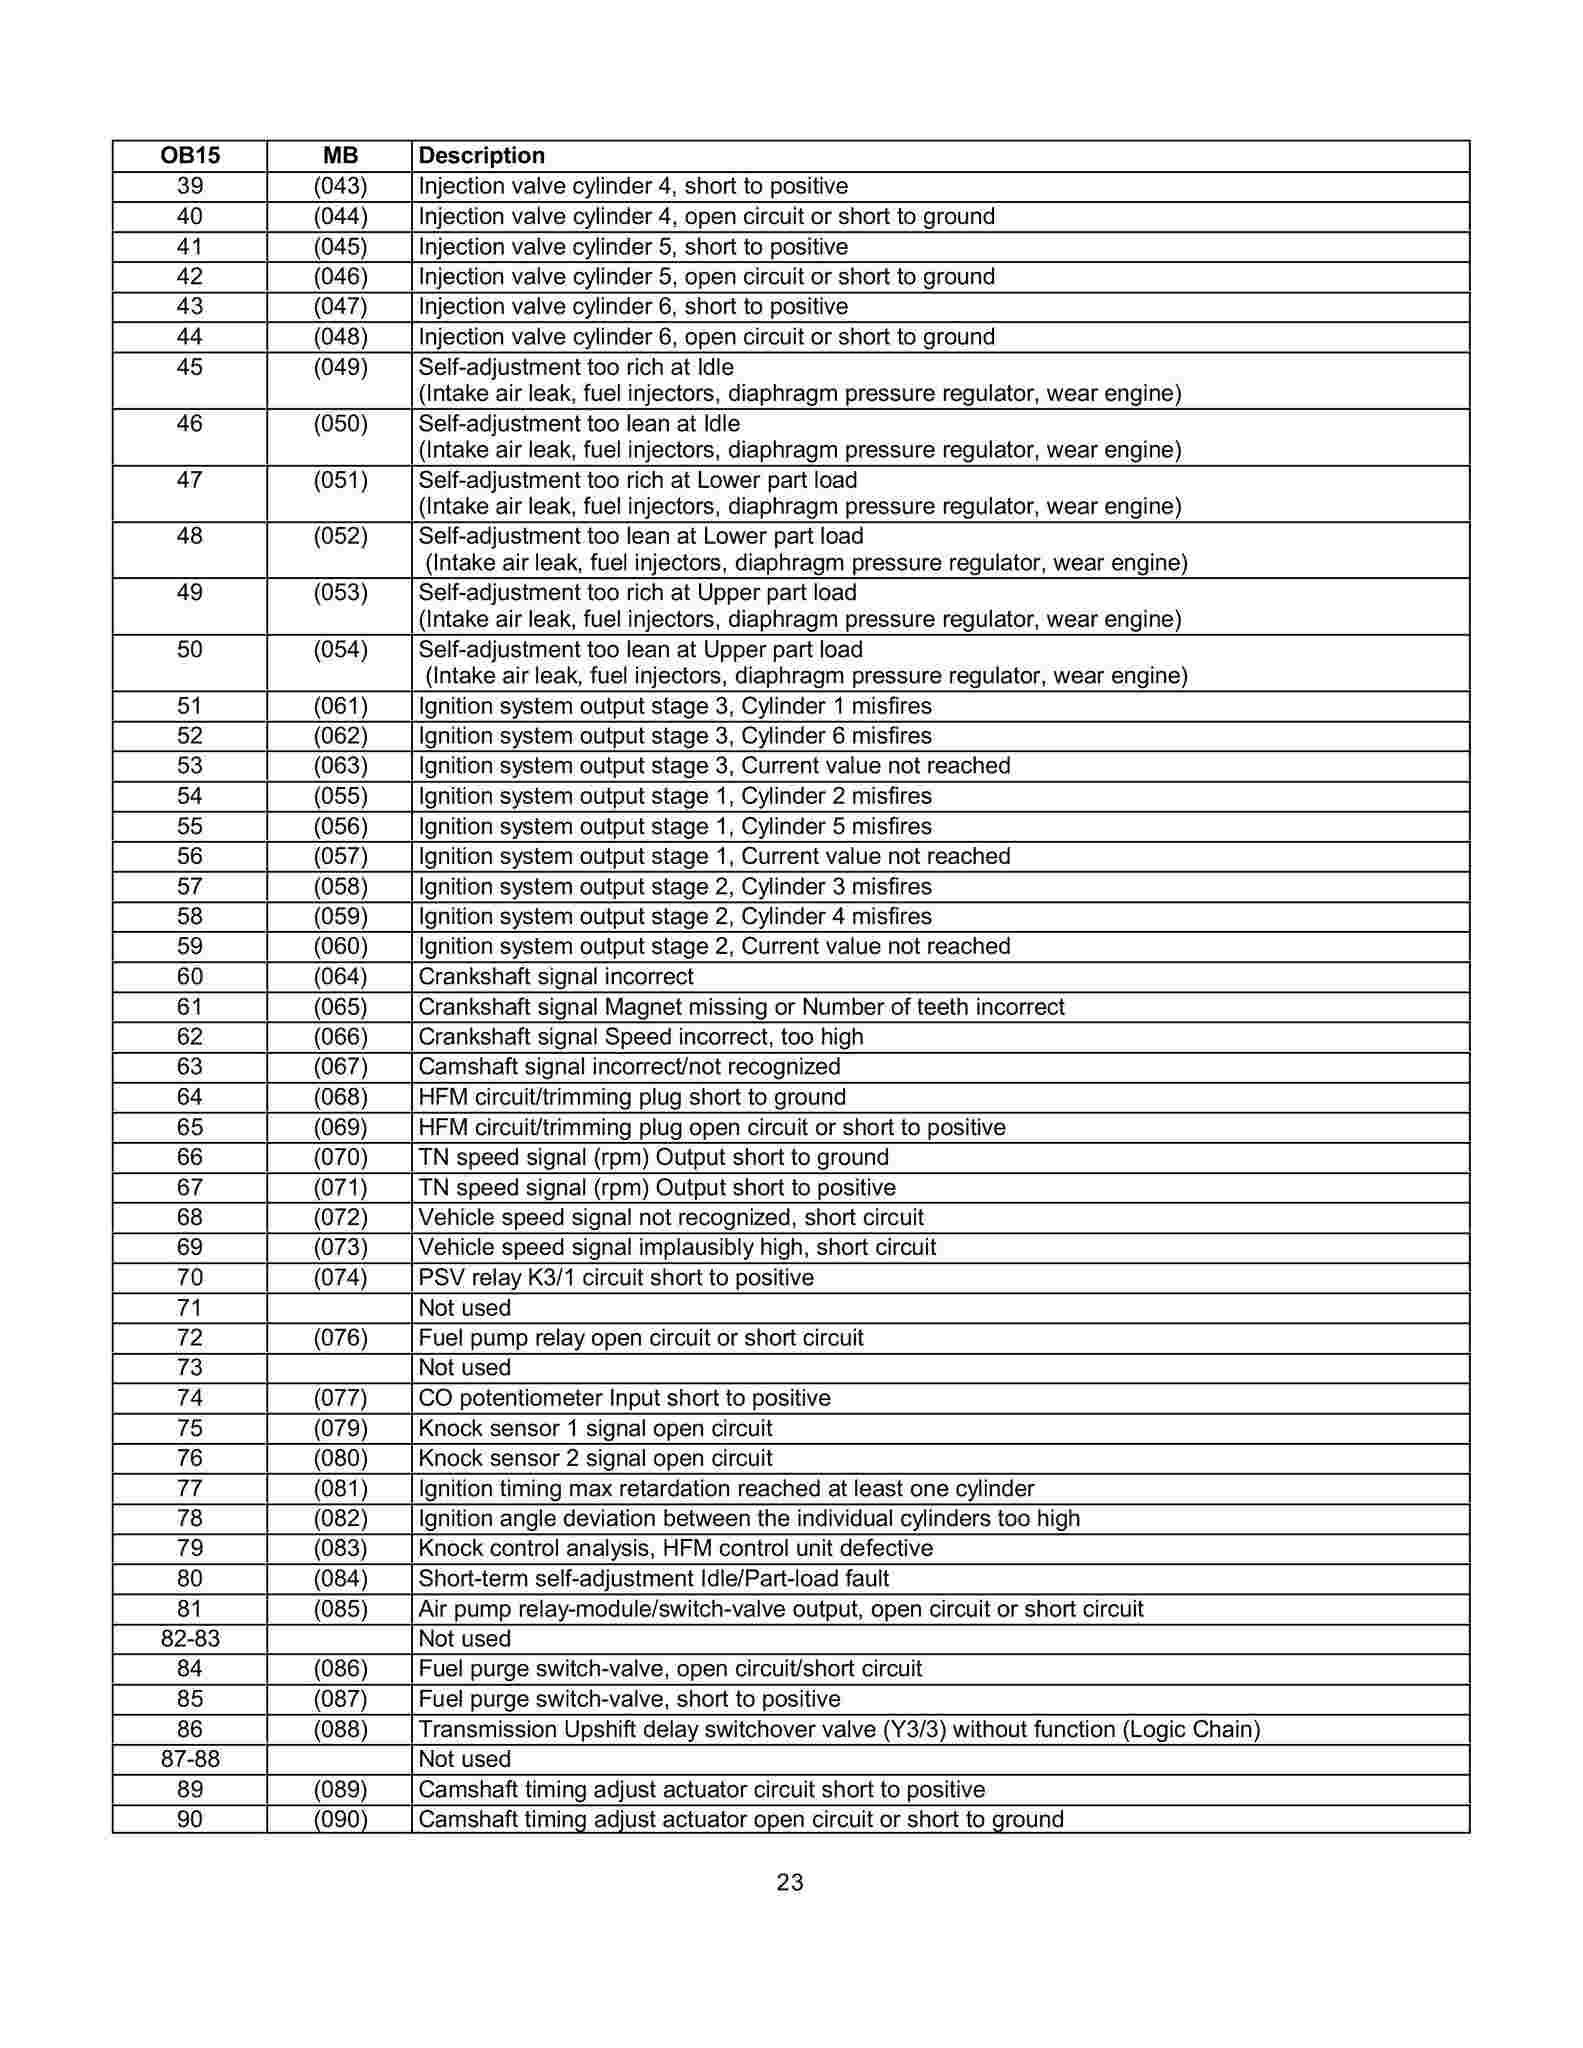 Lista de Códigos de falhas (fault codes) Mercedes-Benz 002313